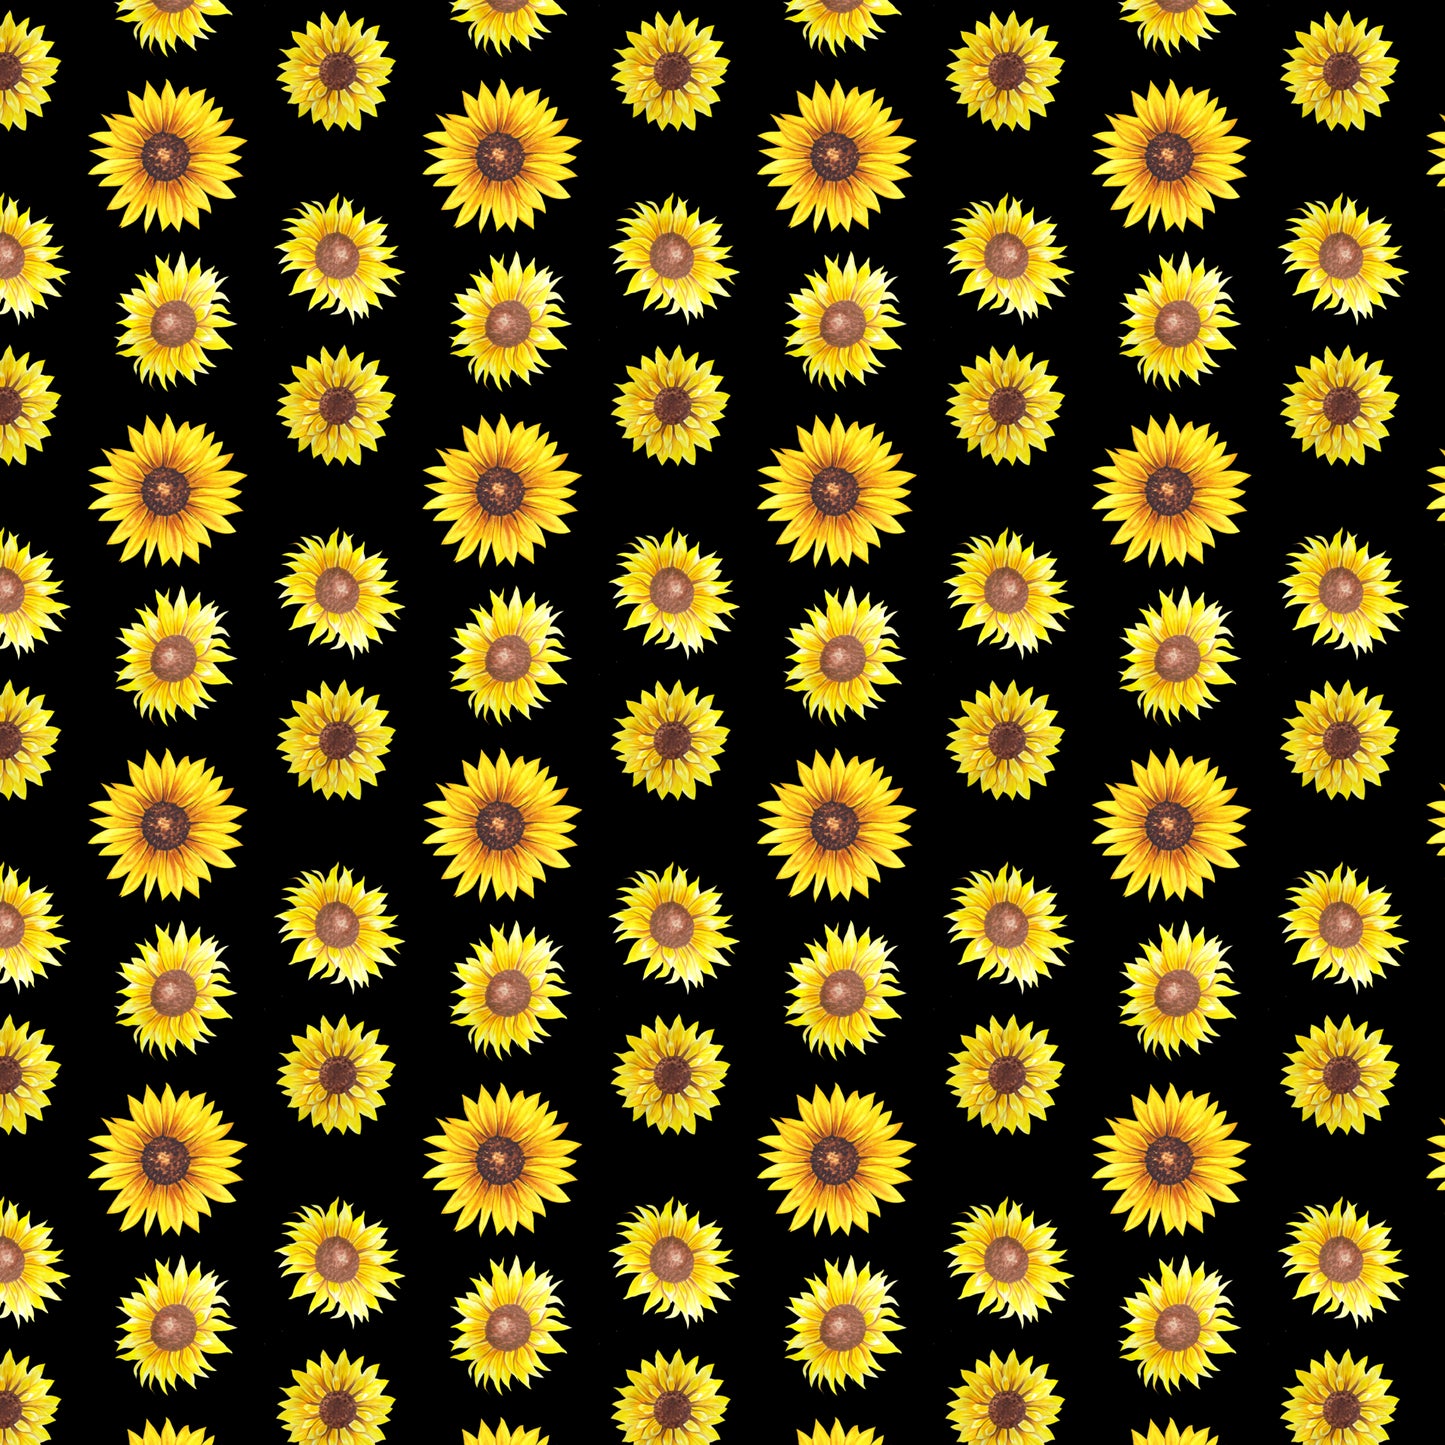 Sunflower 002 Vinyl Sheet